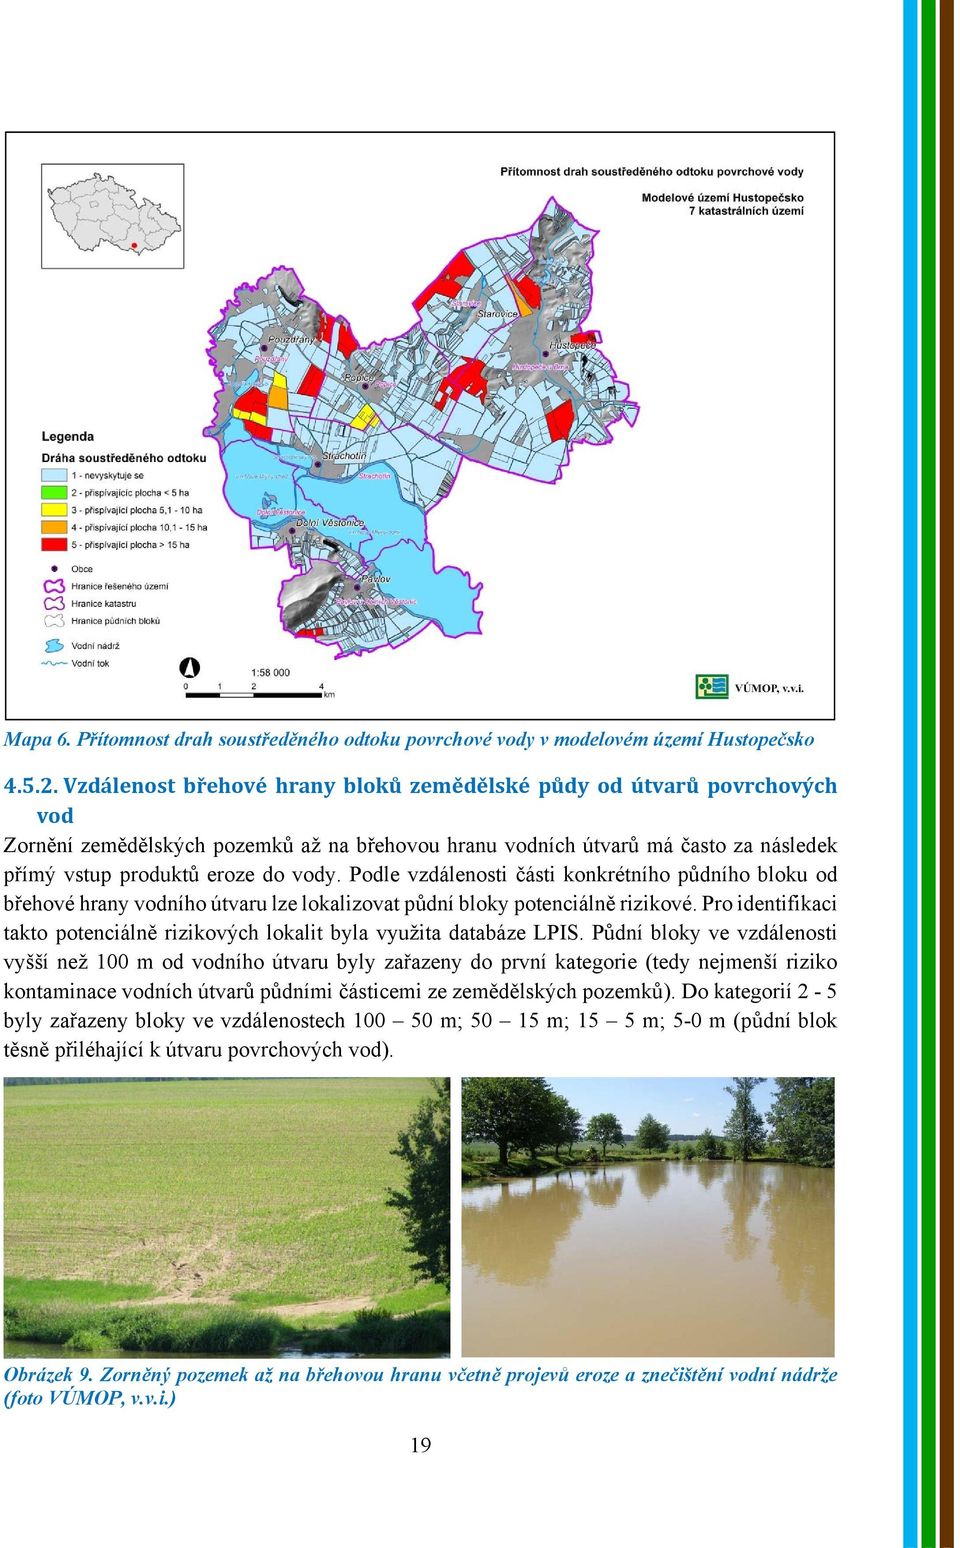 Podle vzdálenosti části konkrétního půdního bloku od břehové hrany vodního útvaru lze lokalizovat půdní bloky potenciálně rizikové.